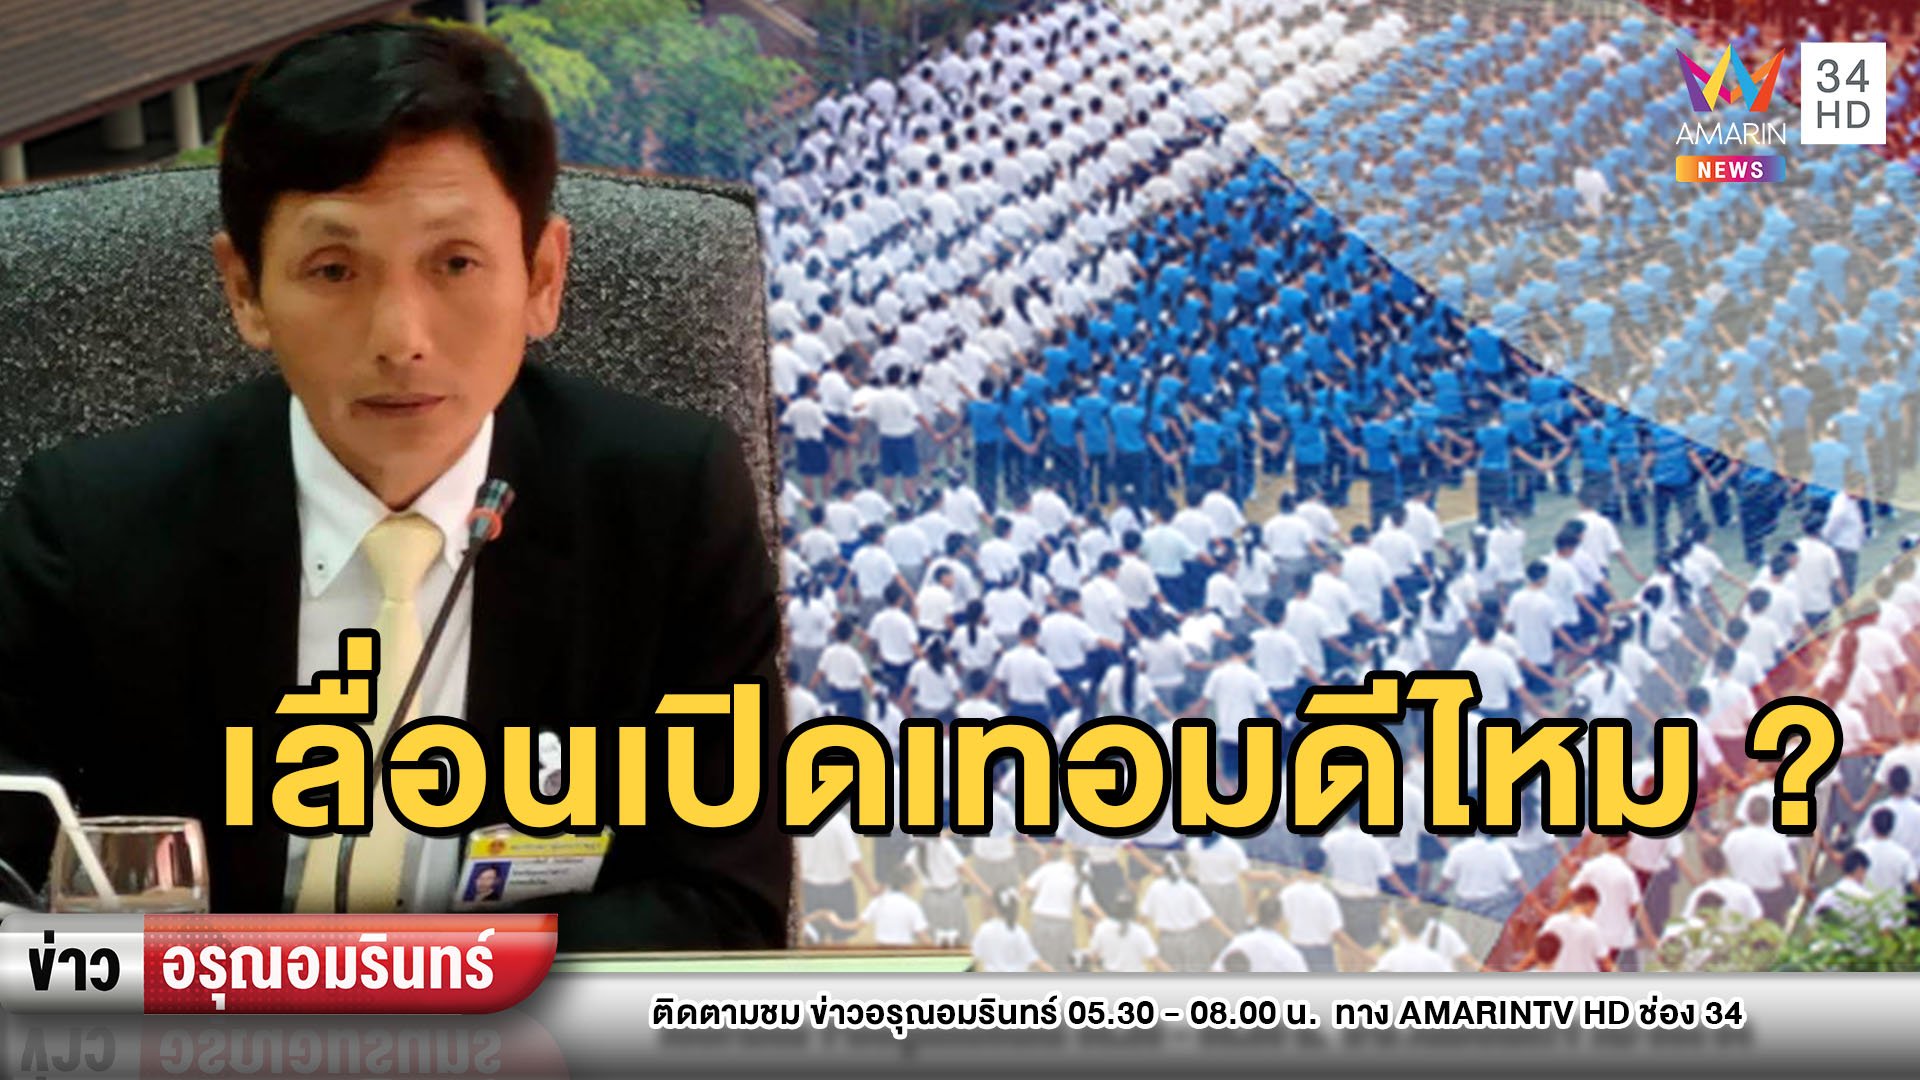 สนั่น! ส.ส.เพื่อไทยเสนอขยับเปิดเทอม 1 ส.ค. – ปลัดศึกษาฯโผล่เบรก  | ข่าวอรุณอมรินทร์ | 24 เม.ย. 63 | AMARIN TVHD34